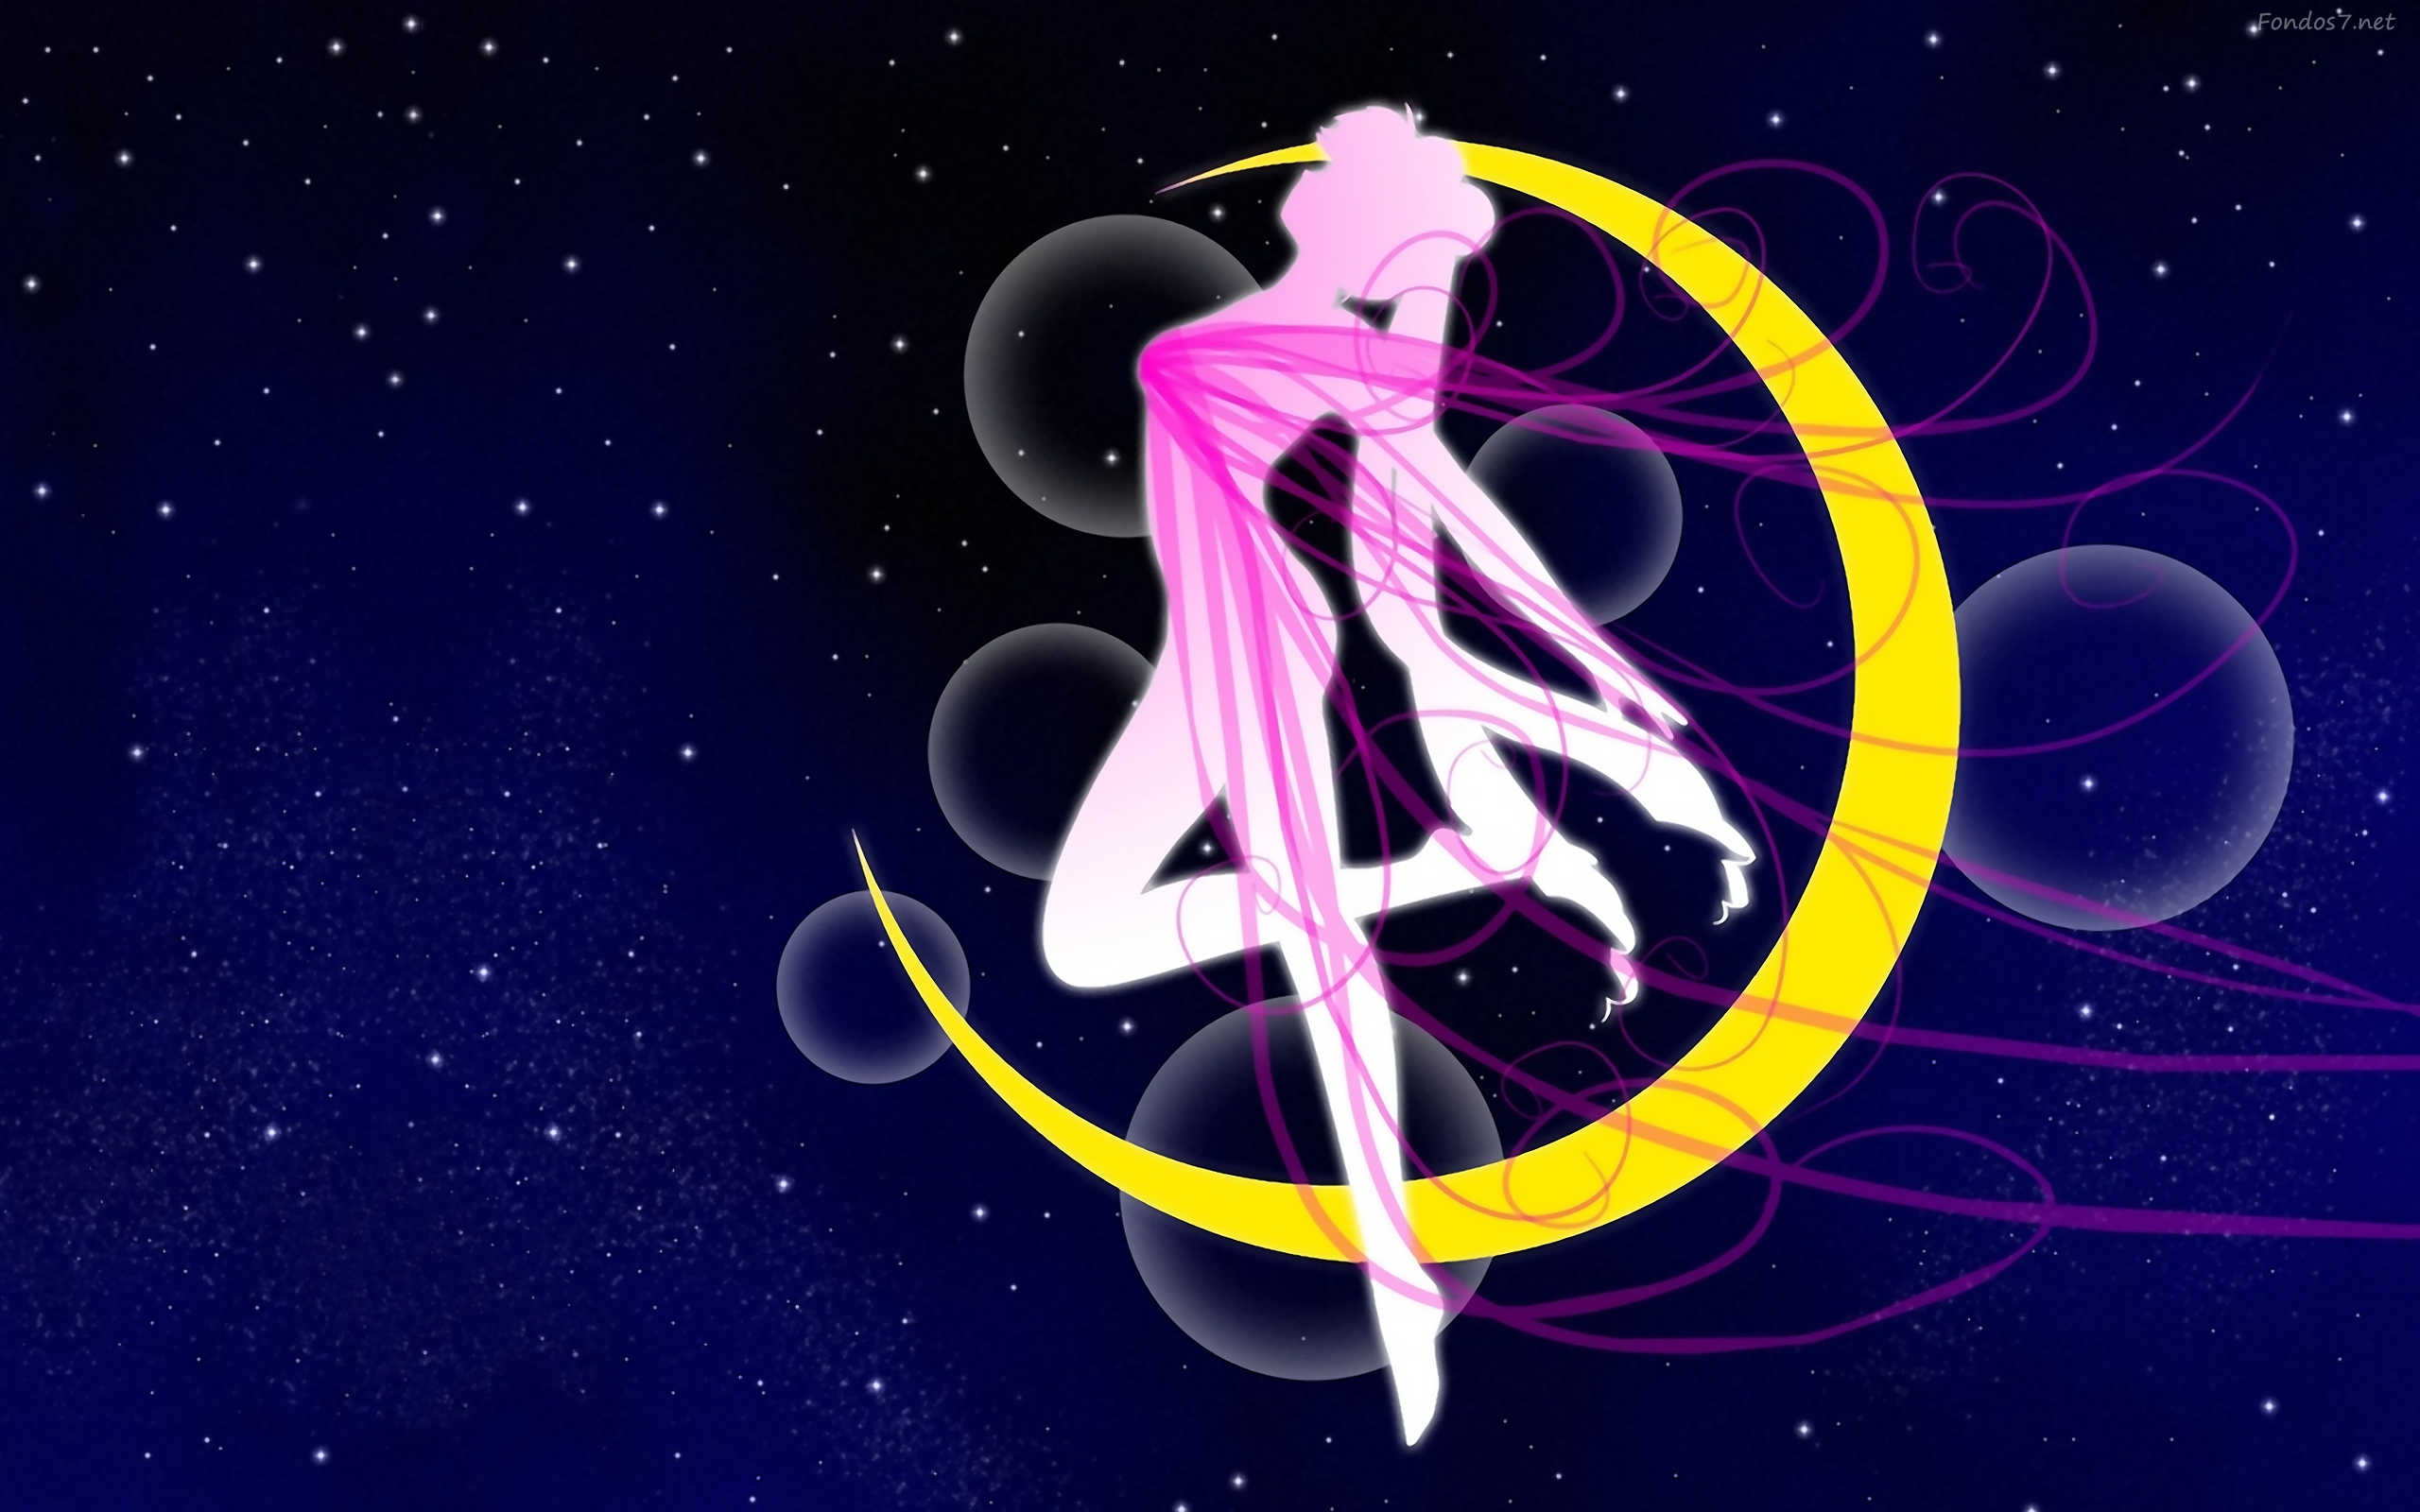 Descargar Fondos De Pantalla Sailor Moon HD Widescreen Gratis Imagenes